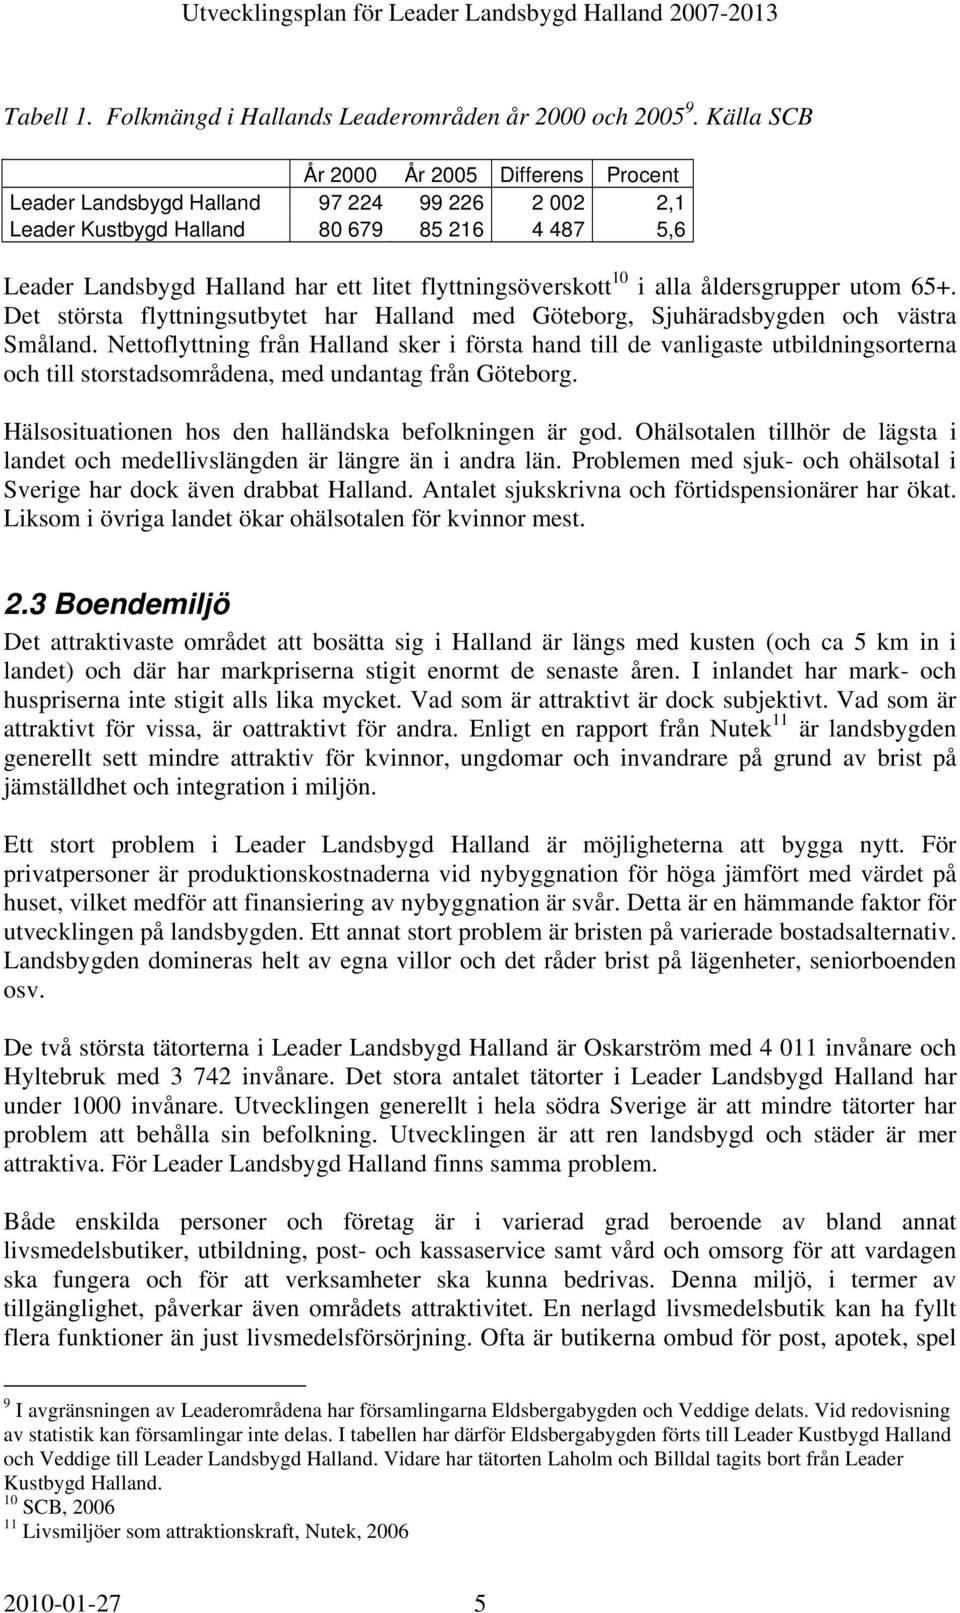 ålersgrupper utom 65+. Det största lyttningsutbytet har Hallan me Göteborg, Sjuhärasbygen och västra Smålan.